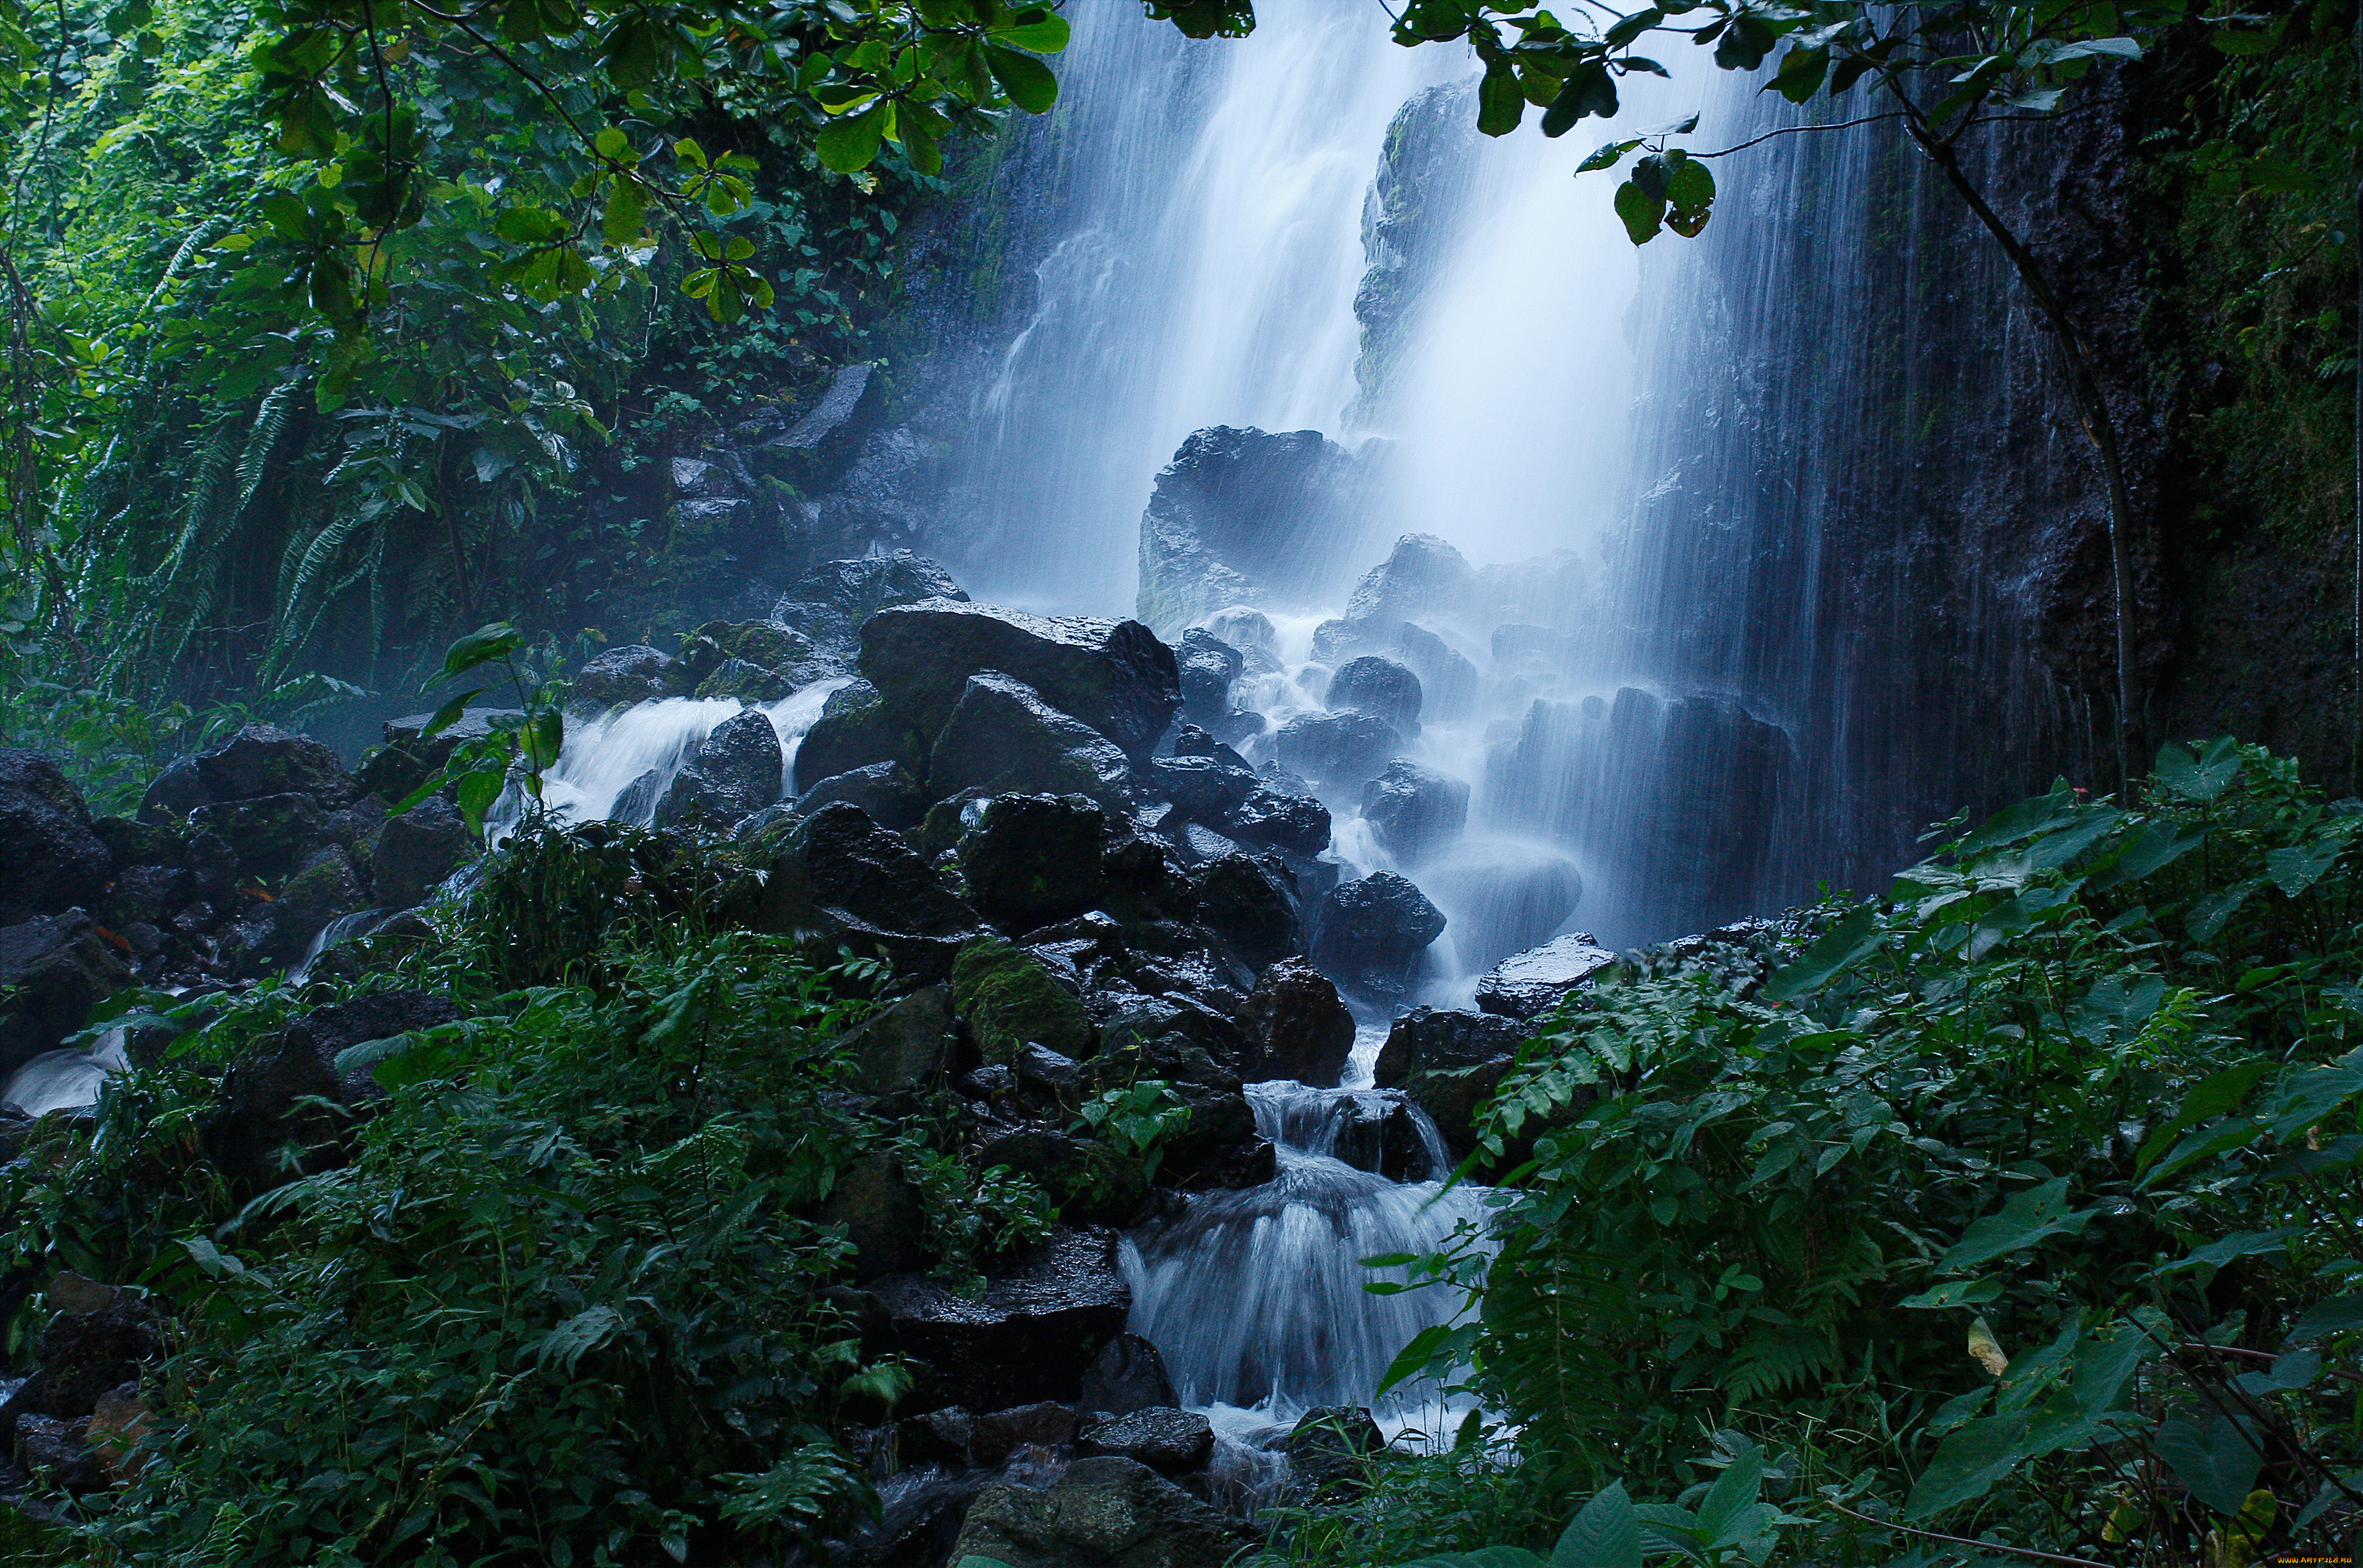 Картинки на заставку. Водопад Мосбрей, США. Водопад в лесу. Лесной водопад. Красивые водопады в джунглях.